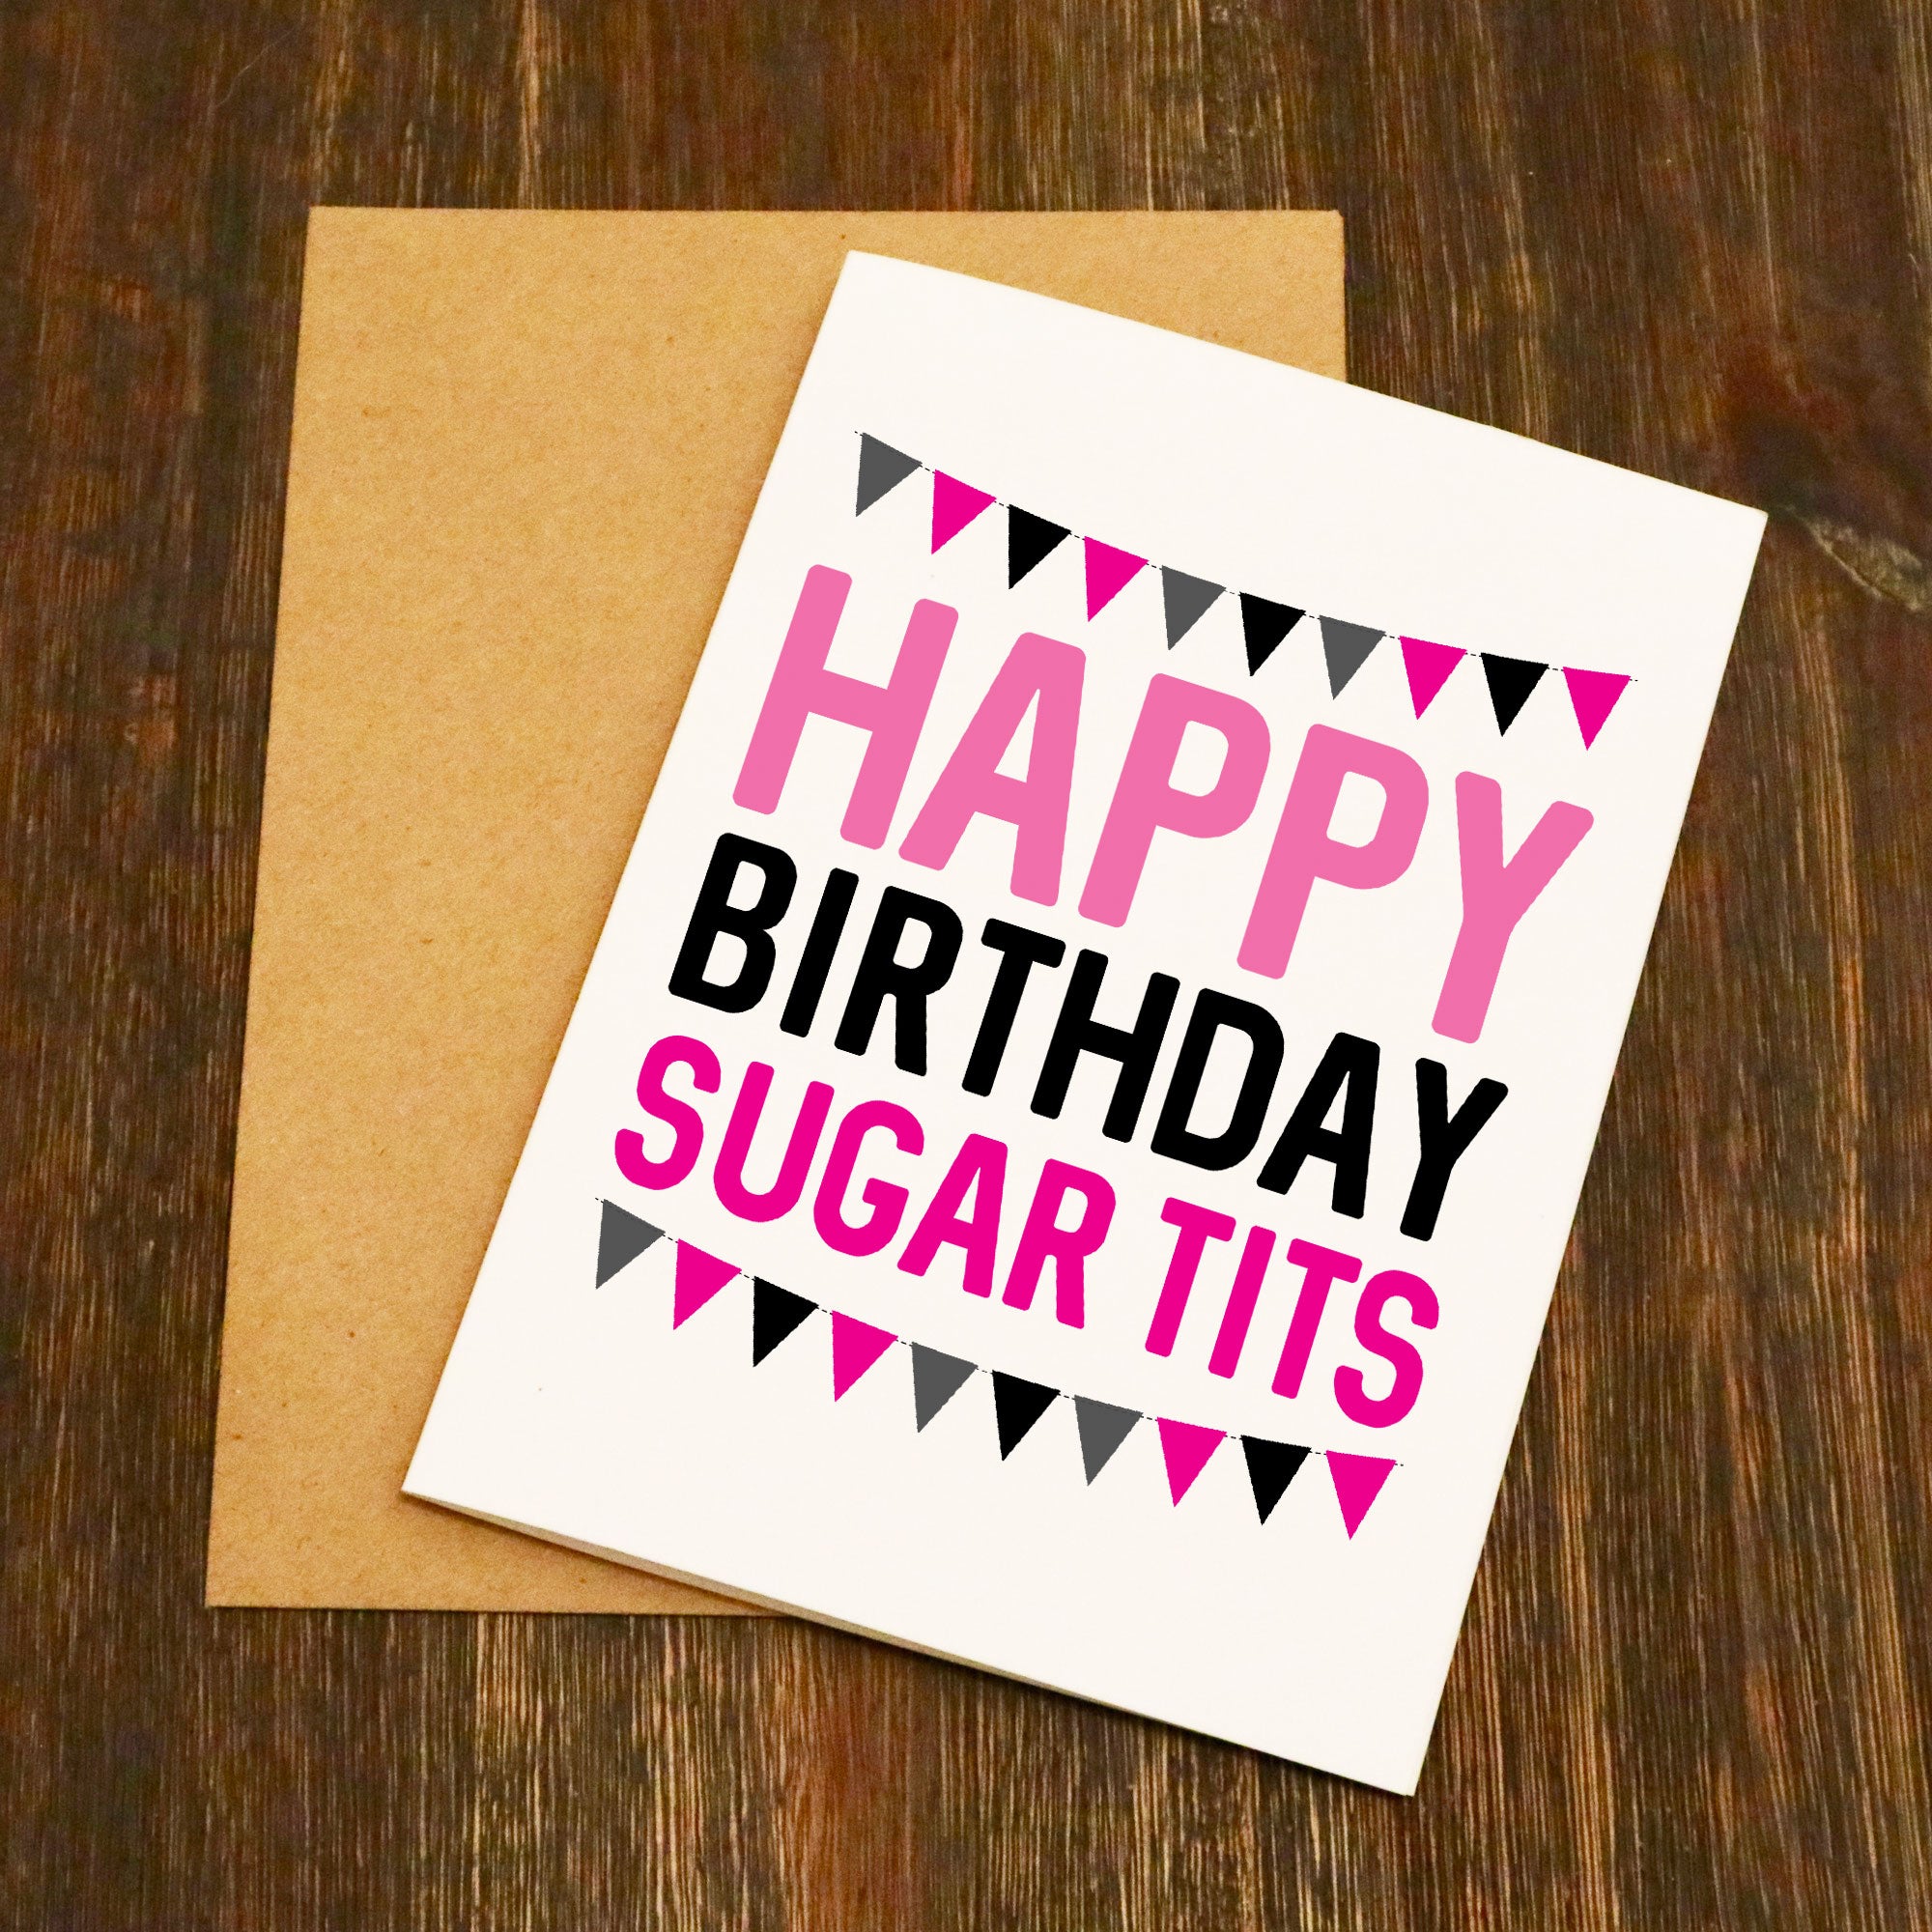 Happy Birthday Sugar Tits Birthday Card Elliebeanprints